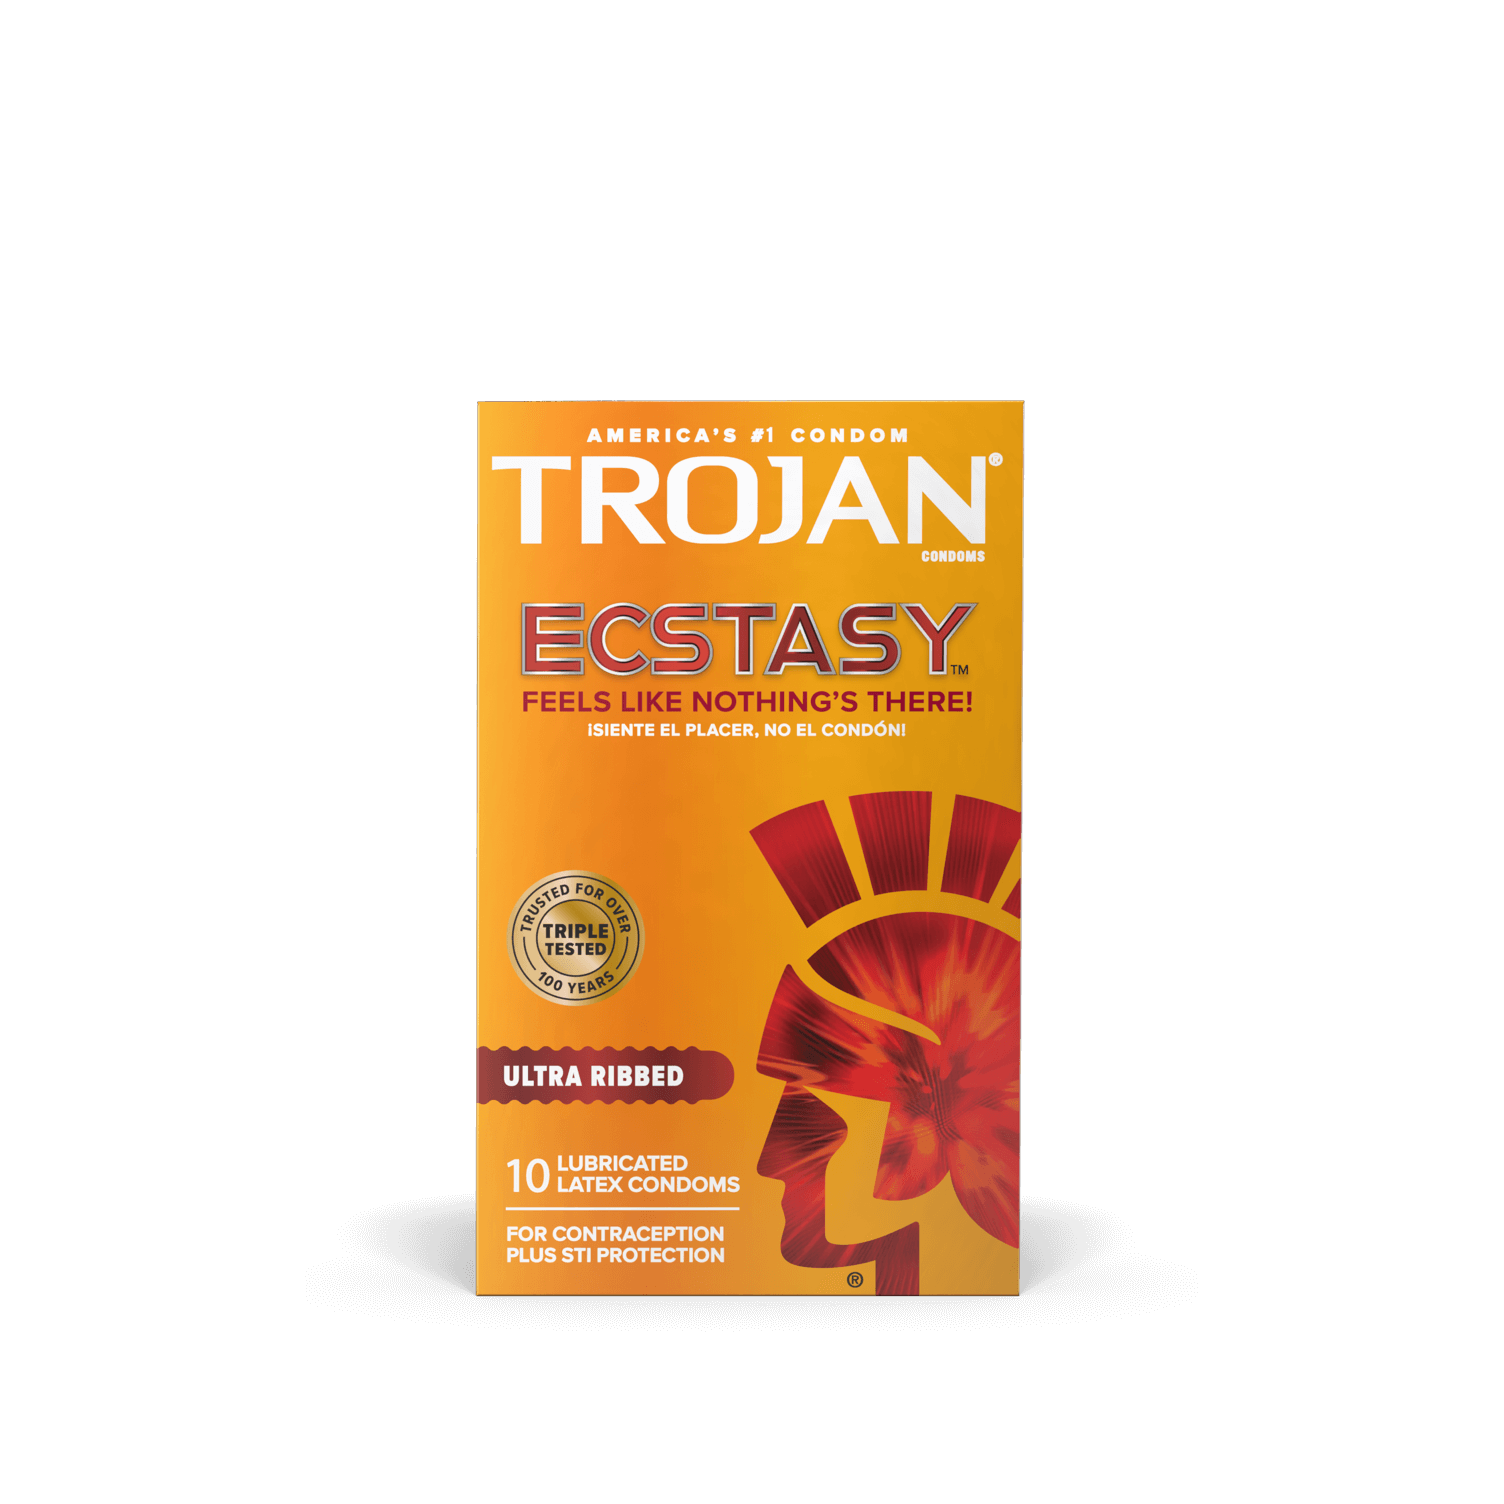 Trojan® Ultra Thin - Trojan Brands